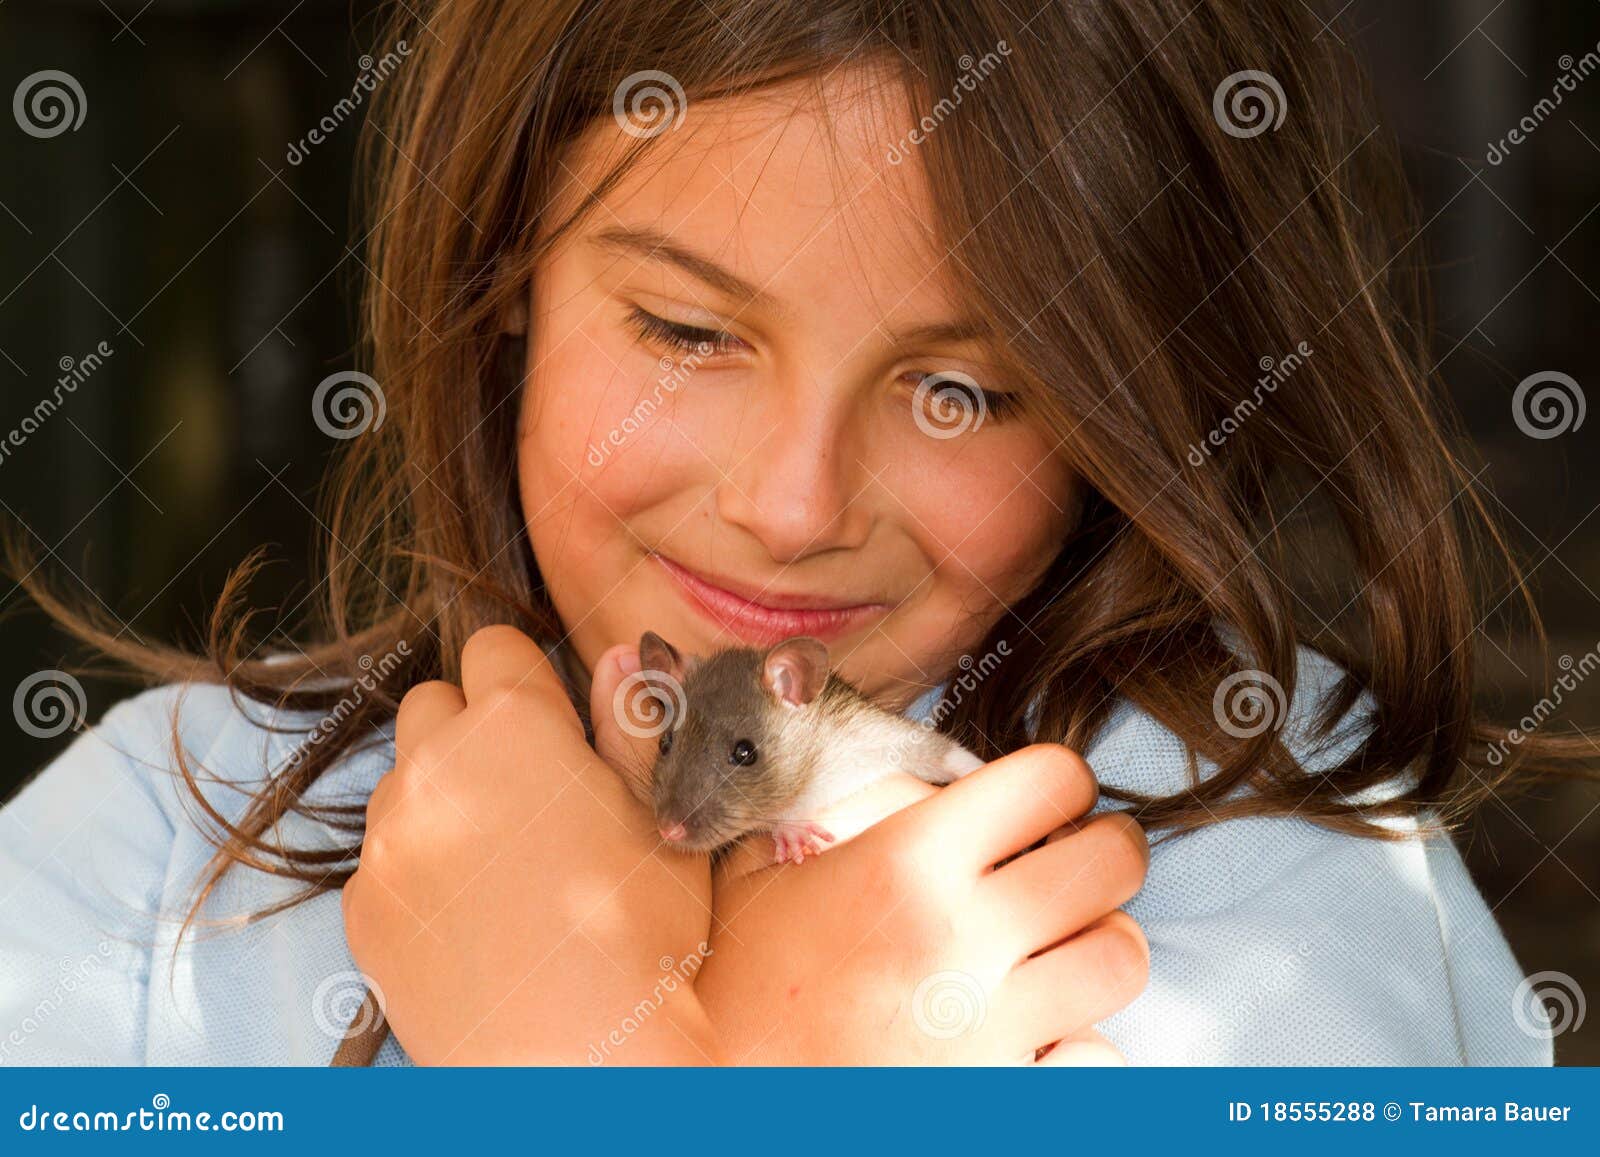 girl with pet rat